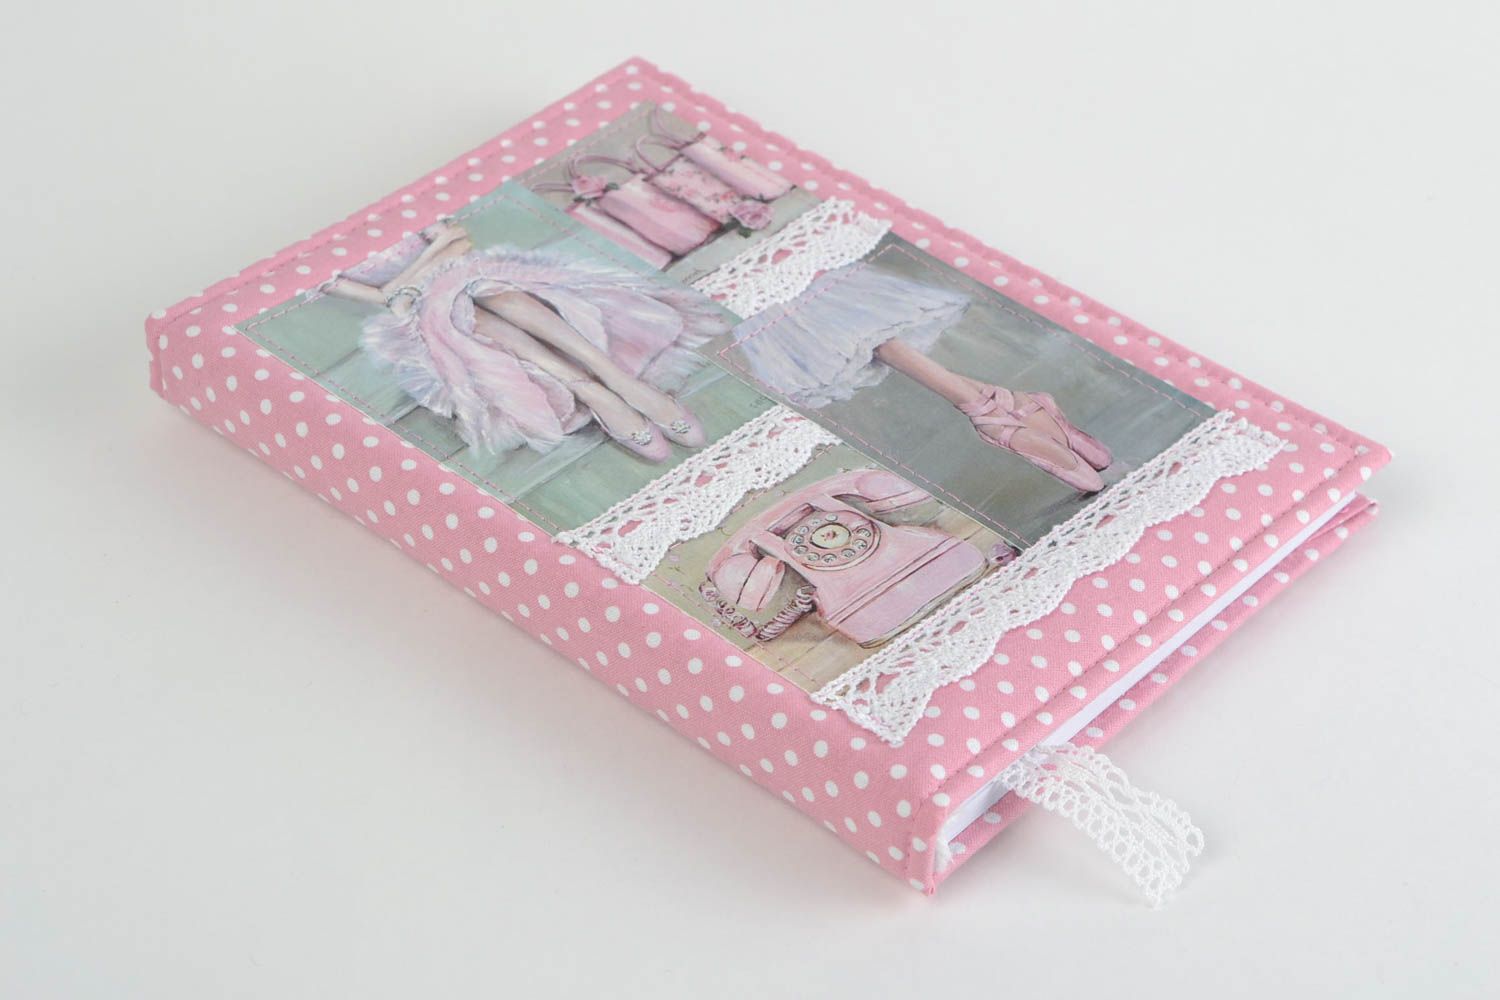 Скрап блокнот ручной работы в тканевой обложке для девушки розовый романтический фото 1